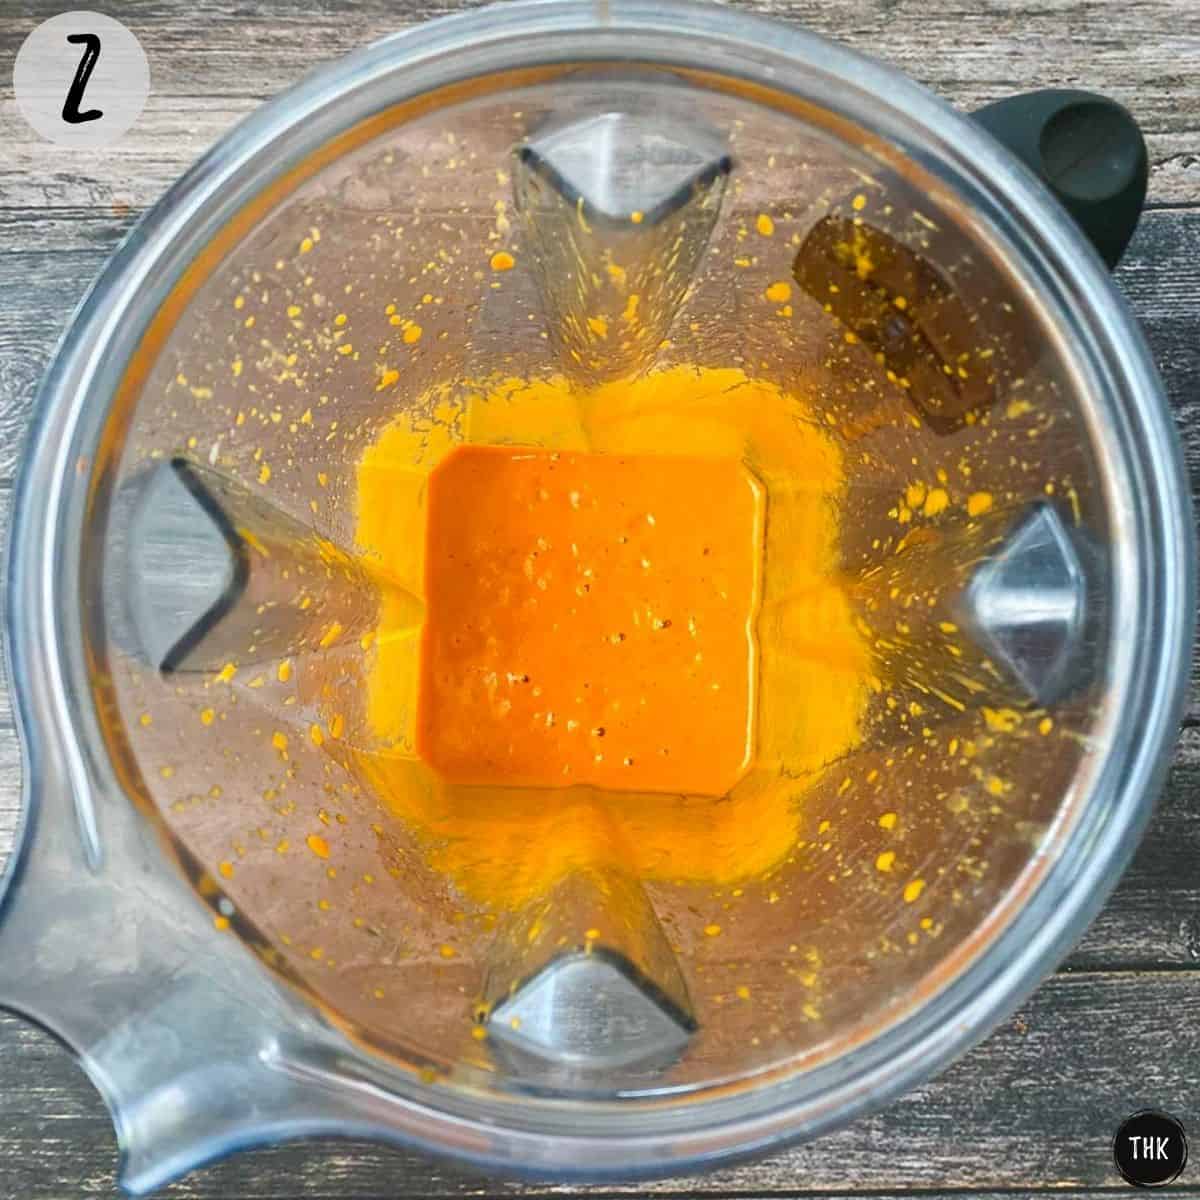 Orange mixture inside blender.